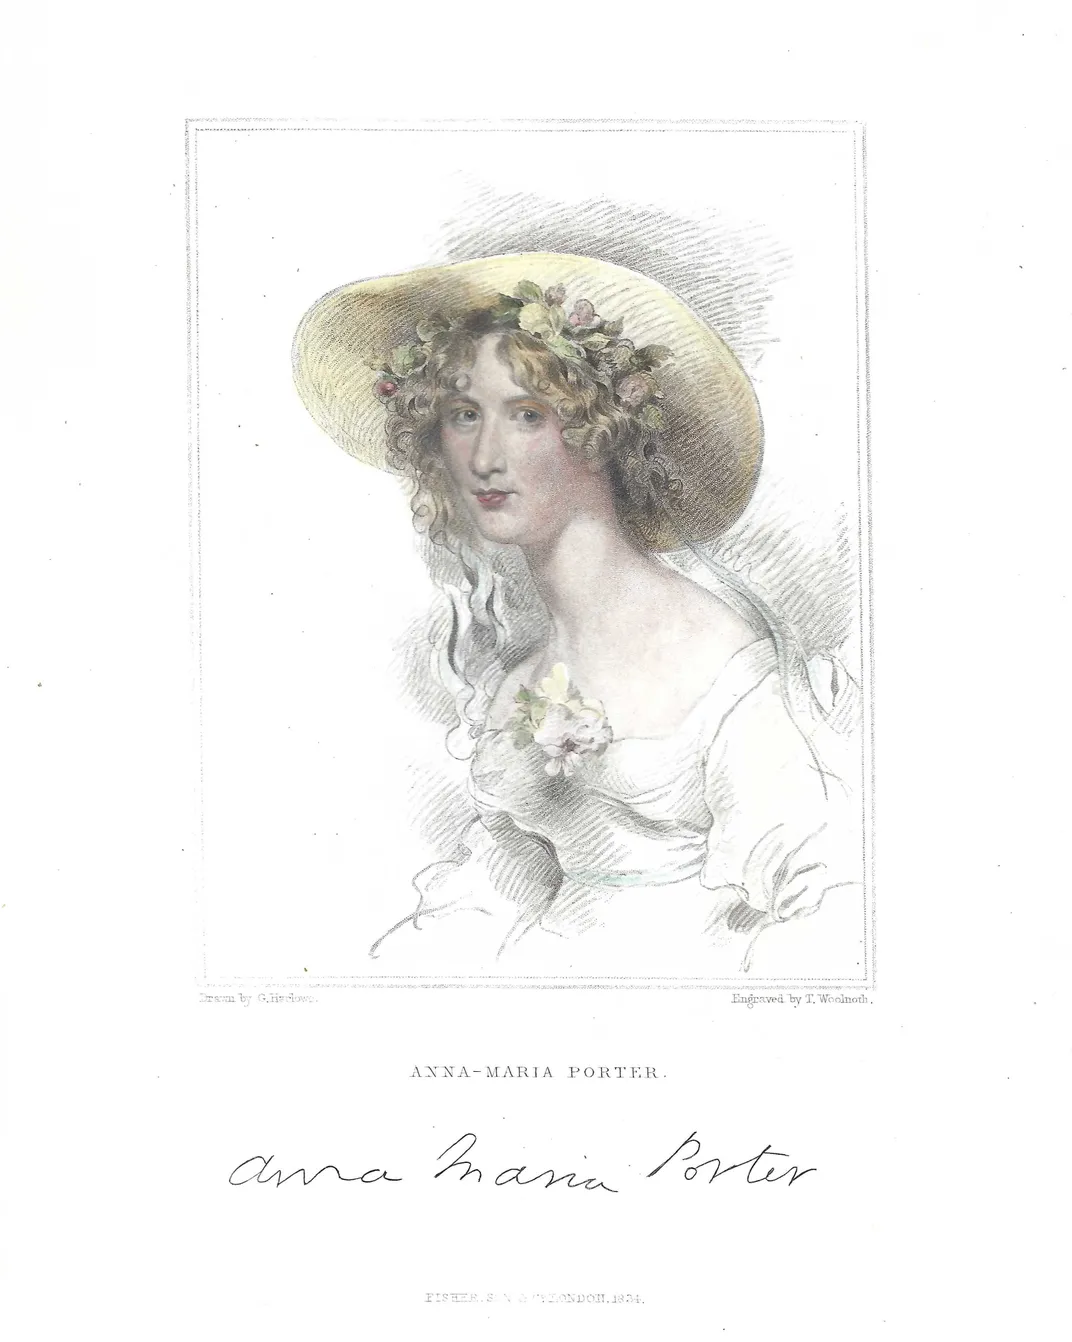 托马斯·伍尔诺斯，以乔治·亨利·哈洛命名，《安娜·玛丽亚·波特肖像》，1834年出版